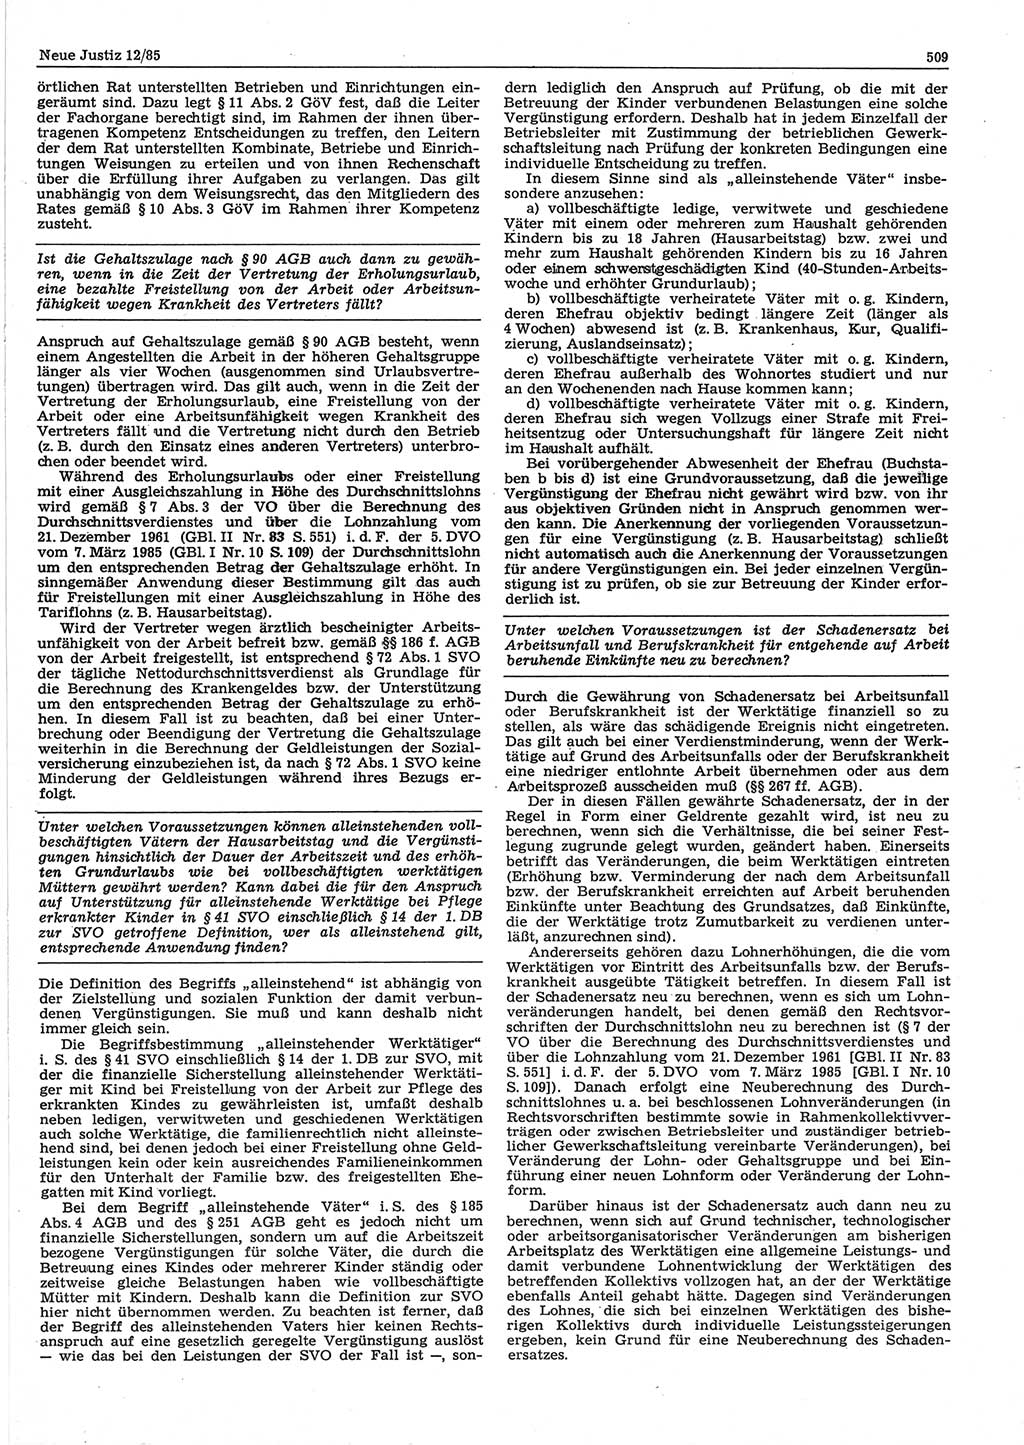 Neue Justiz (NJ), Zeitschrift für sozialistisches Recht und Gesetzlichkeit [Deutsche Demokratische Republik (DDR)], 39. Jahrgang 1985, Seite 509 (NJ DDR 1985, S. 509)